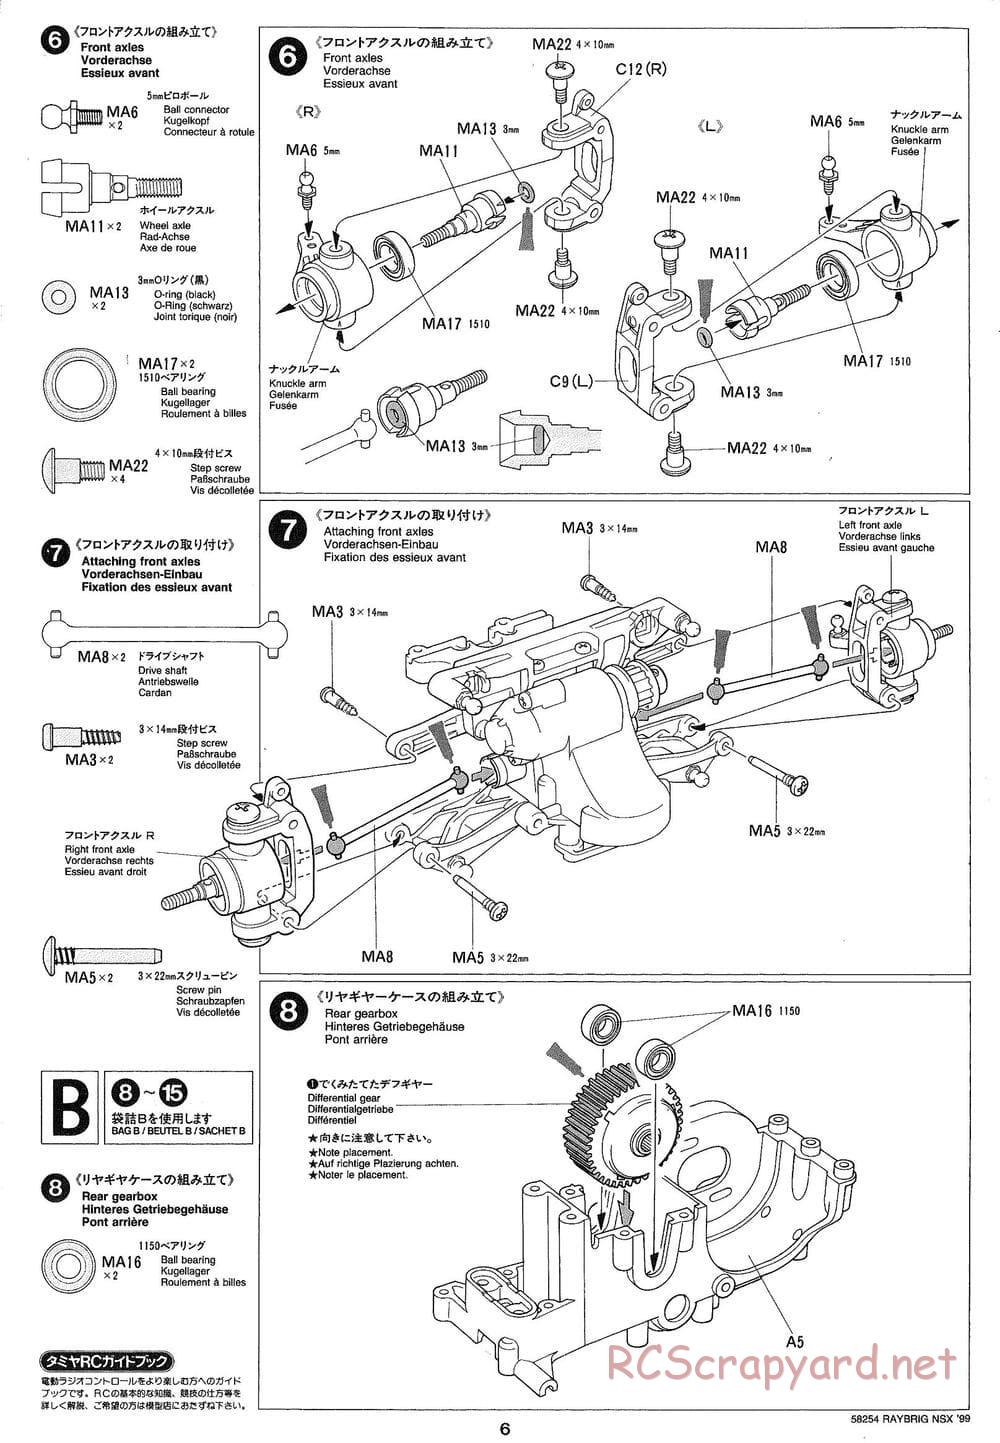 Tamiya - Raybrig NSX 99 - TA-03R Chassis - Manual - Page 6